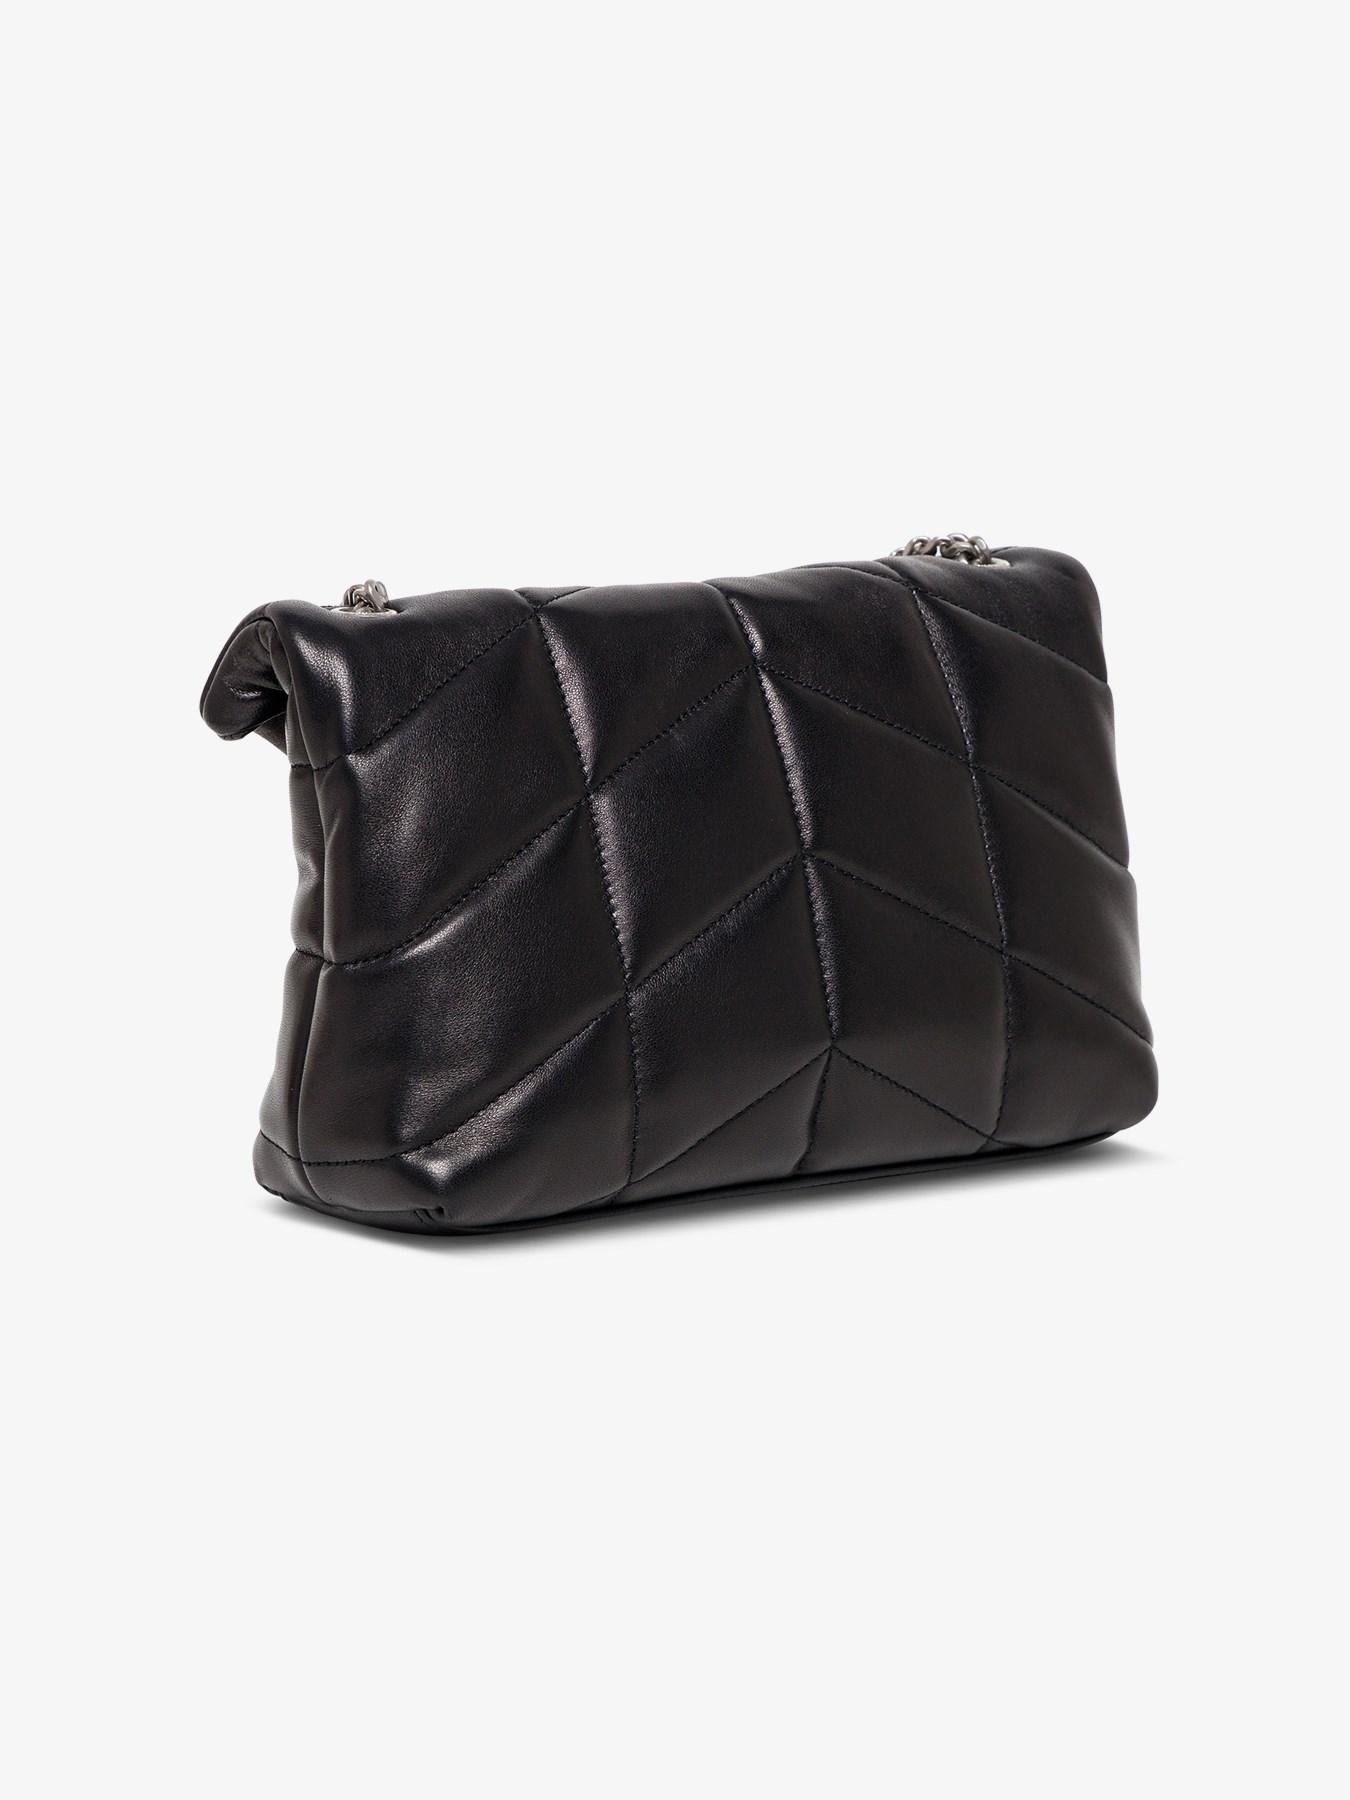 Saint Laurent Mini Loulou Puffer Bag in Black